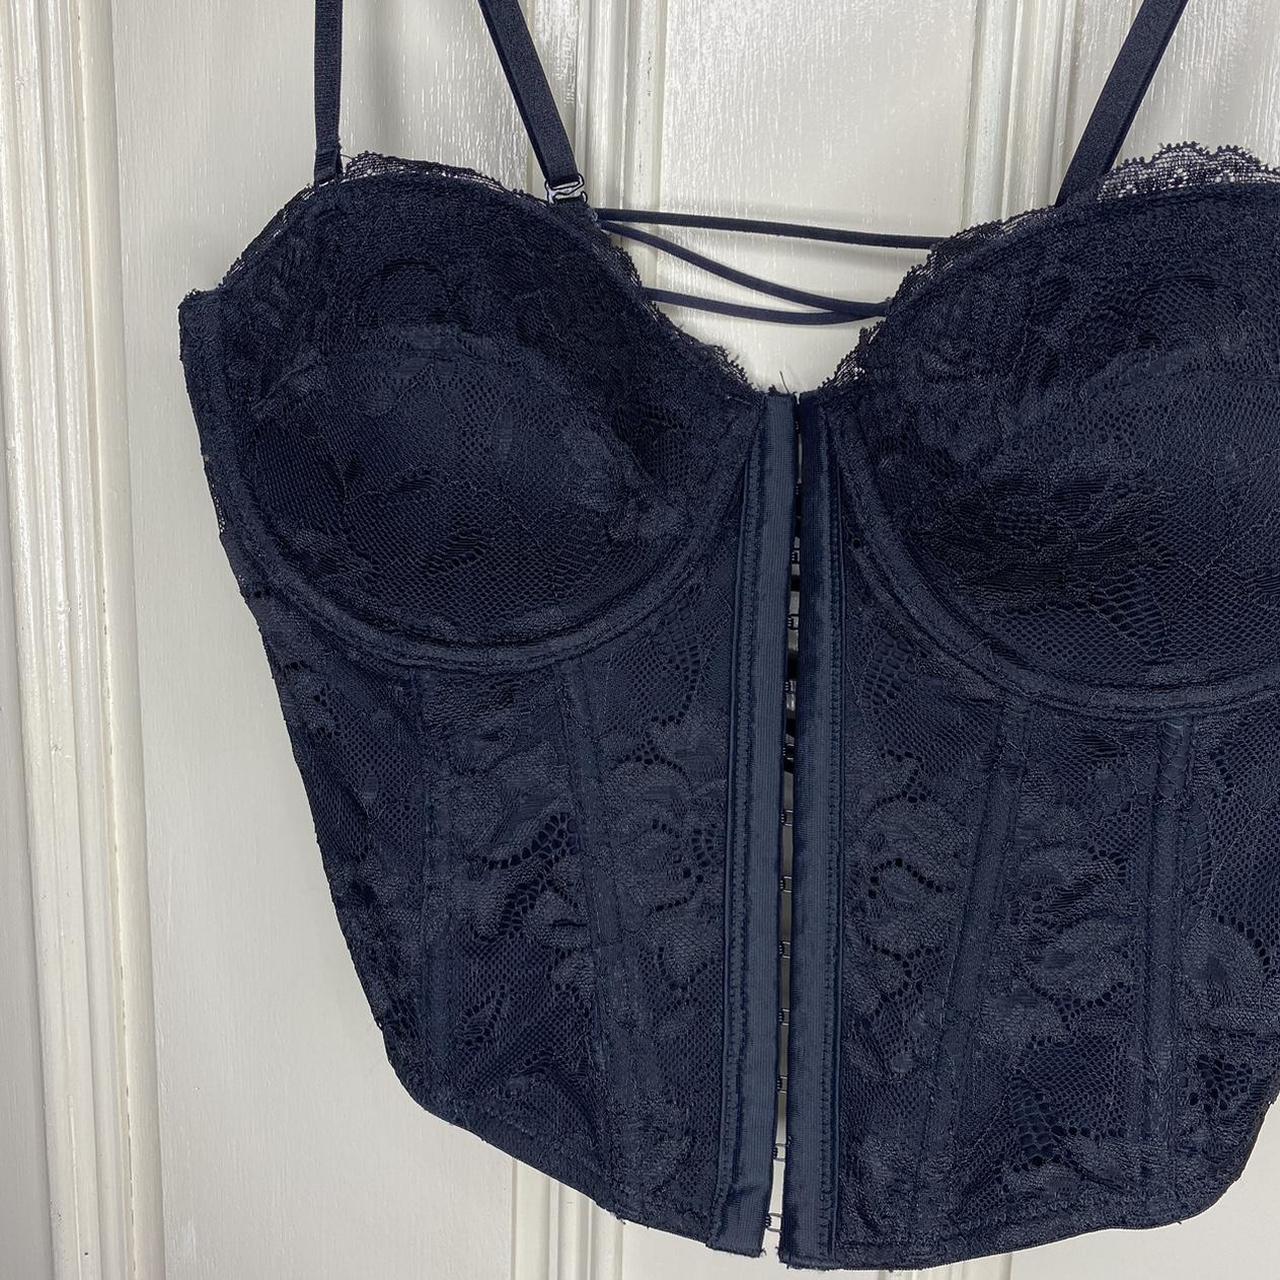 glassons black corset top lace detail size 12 🎀... - Depop